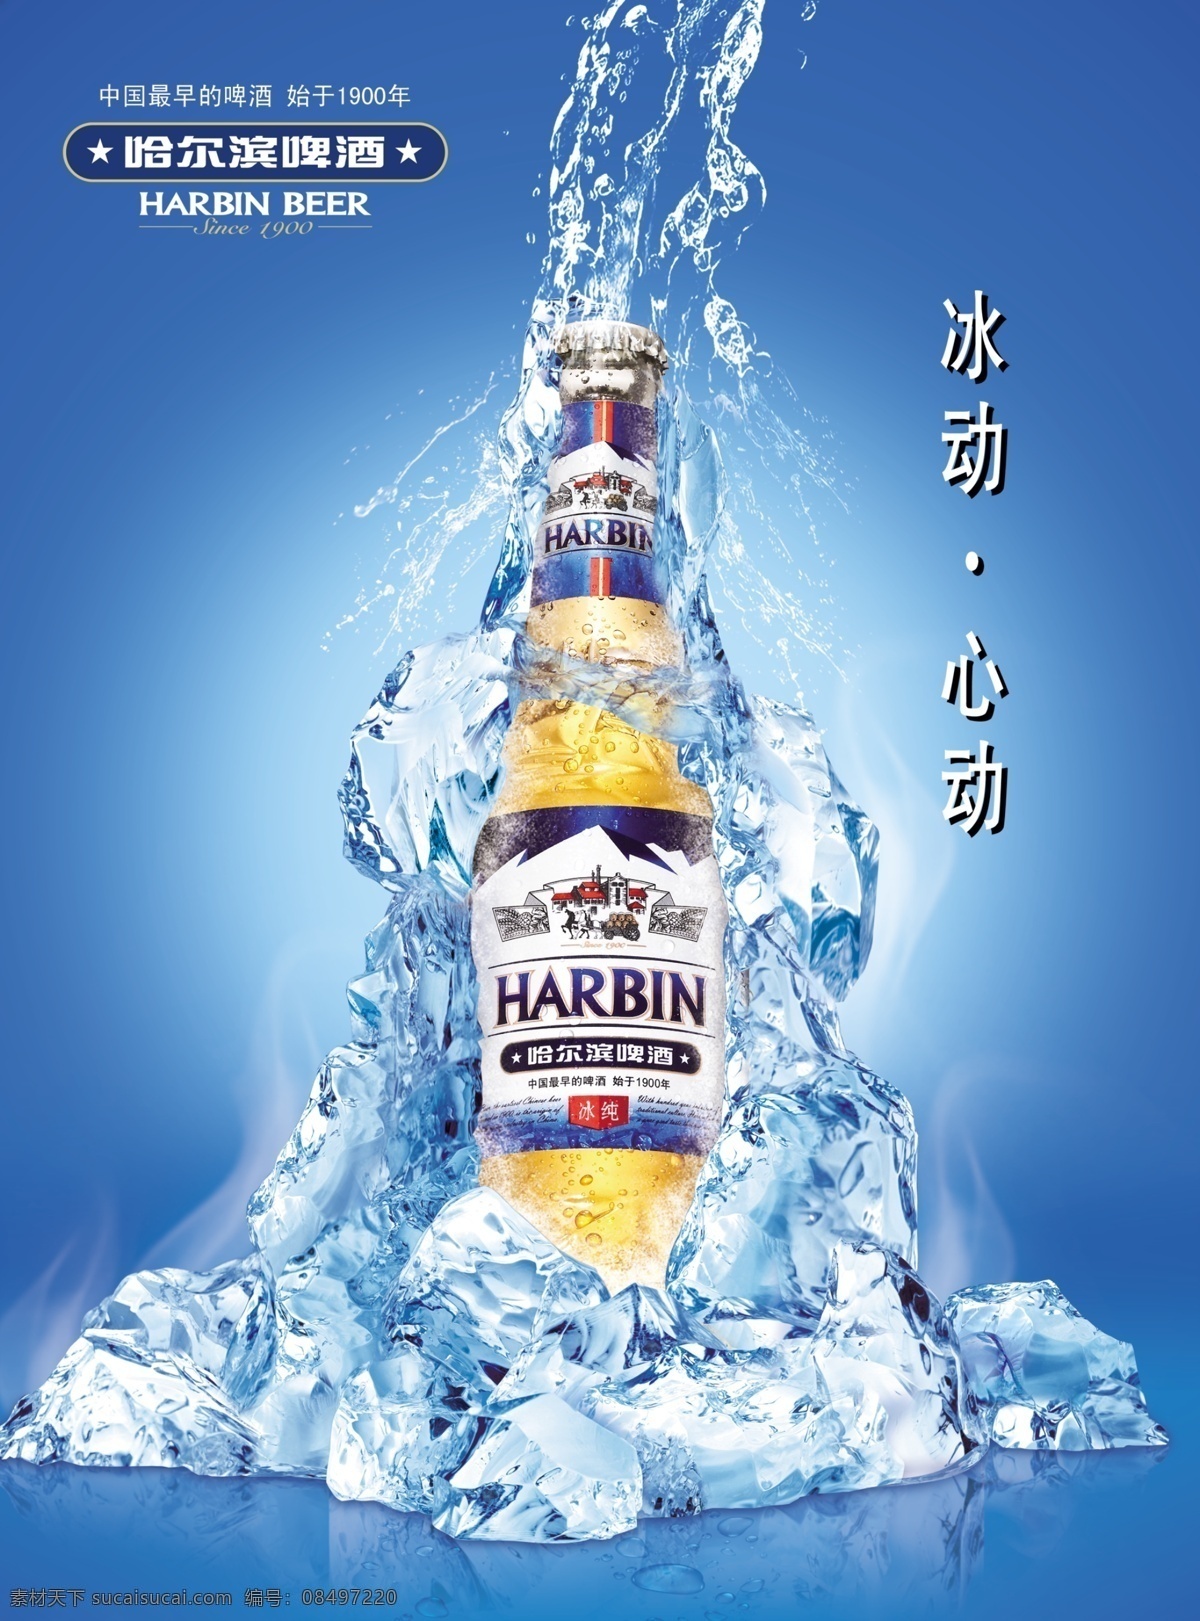 哈尔滨 啤酒 创意 海报 设计素材 模板 啤酒广告 创意海报 海报下载 宣传单 宣传广告 psd源文件 蓝色